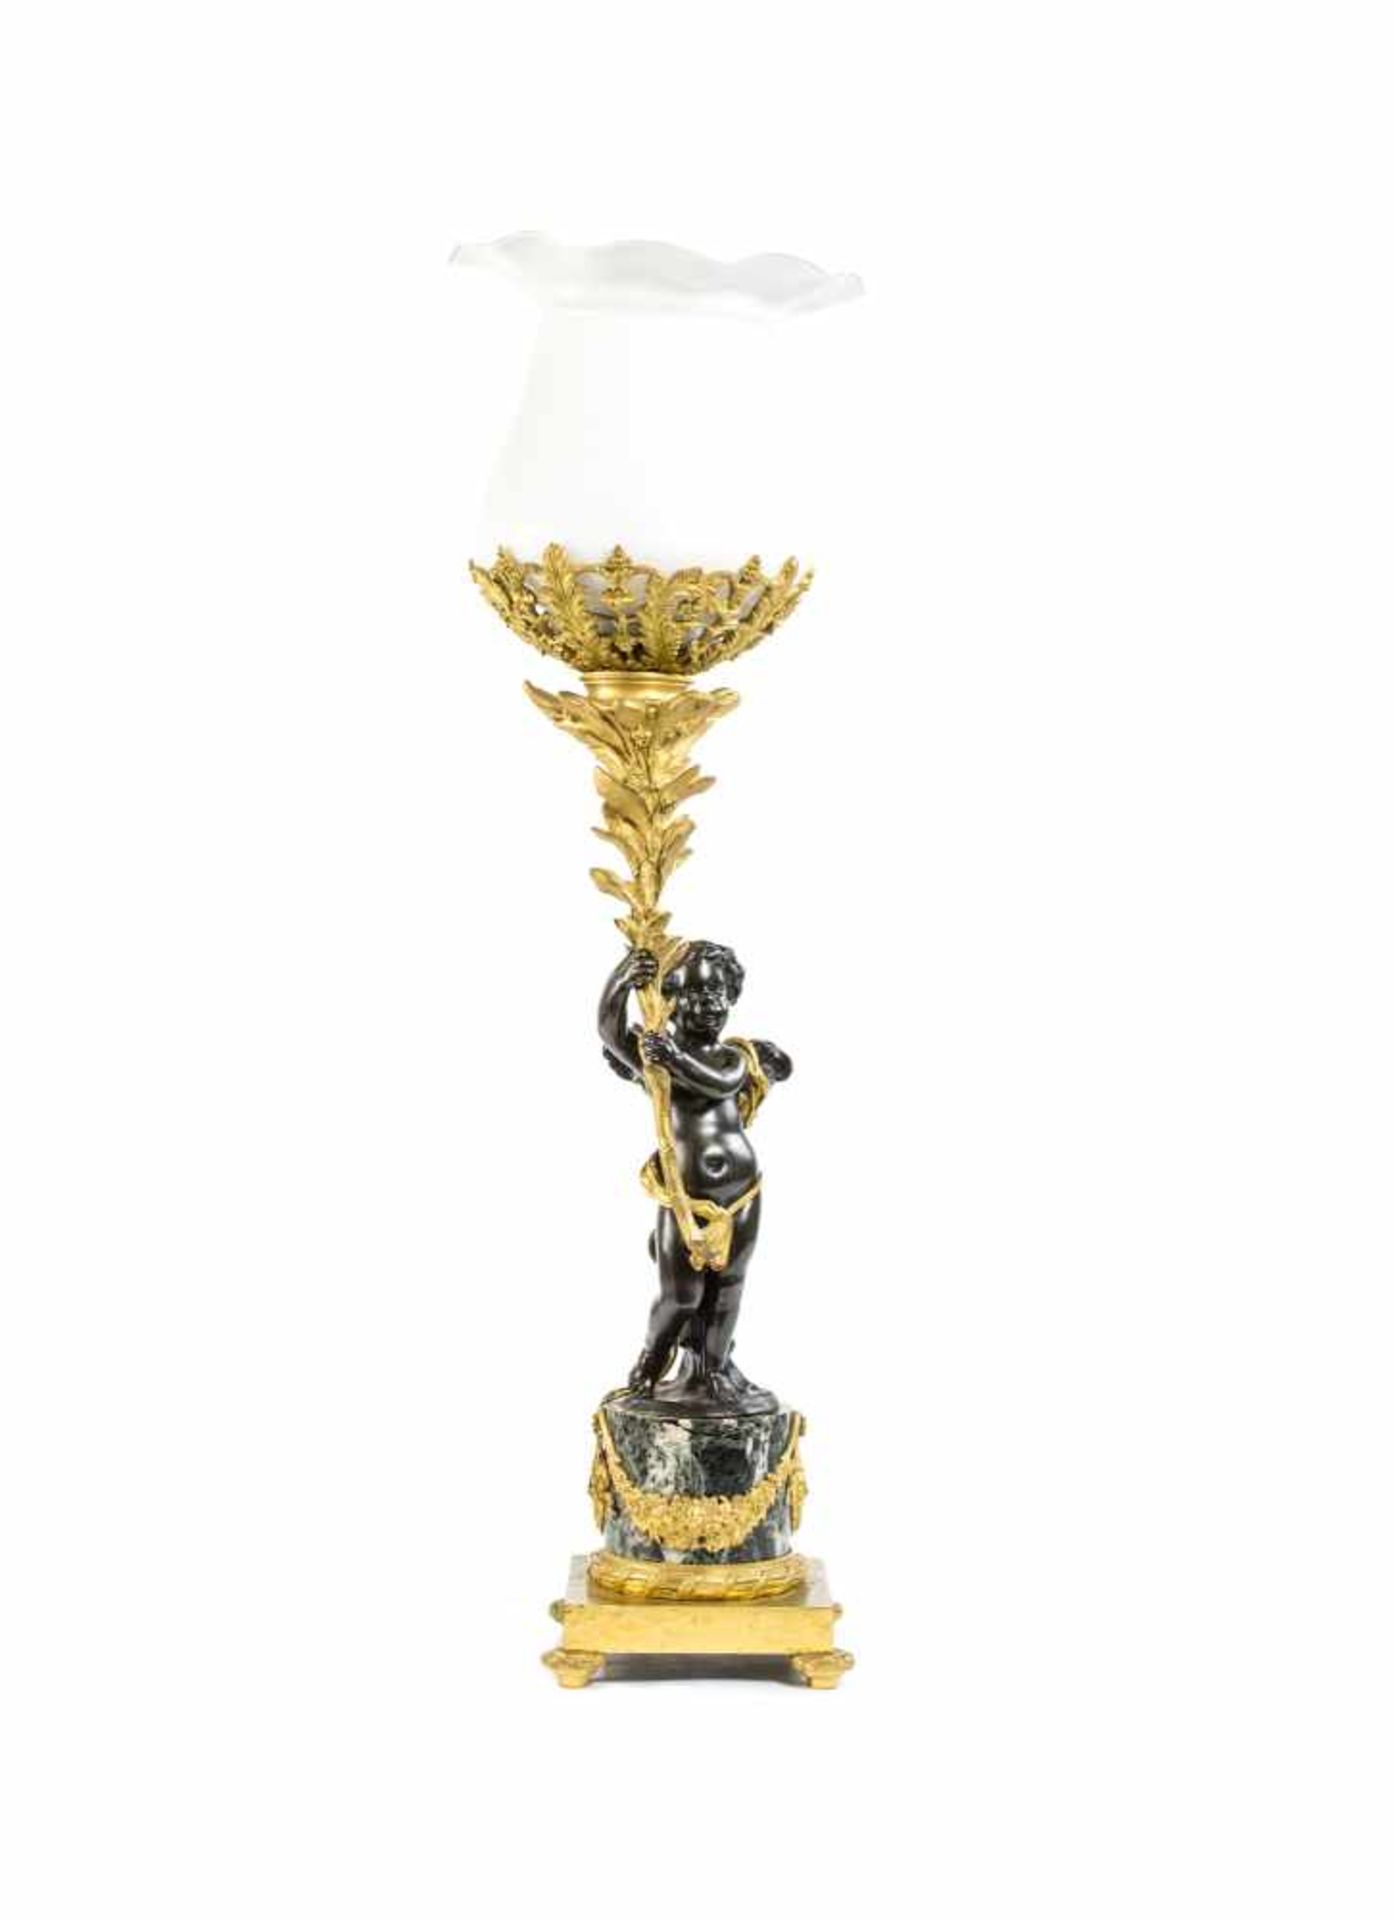 Lampe im Empire-Stil mit BronzefigurFrankreich, Ende 19. Jh., Bronze, vergoldet, Figur schwarz